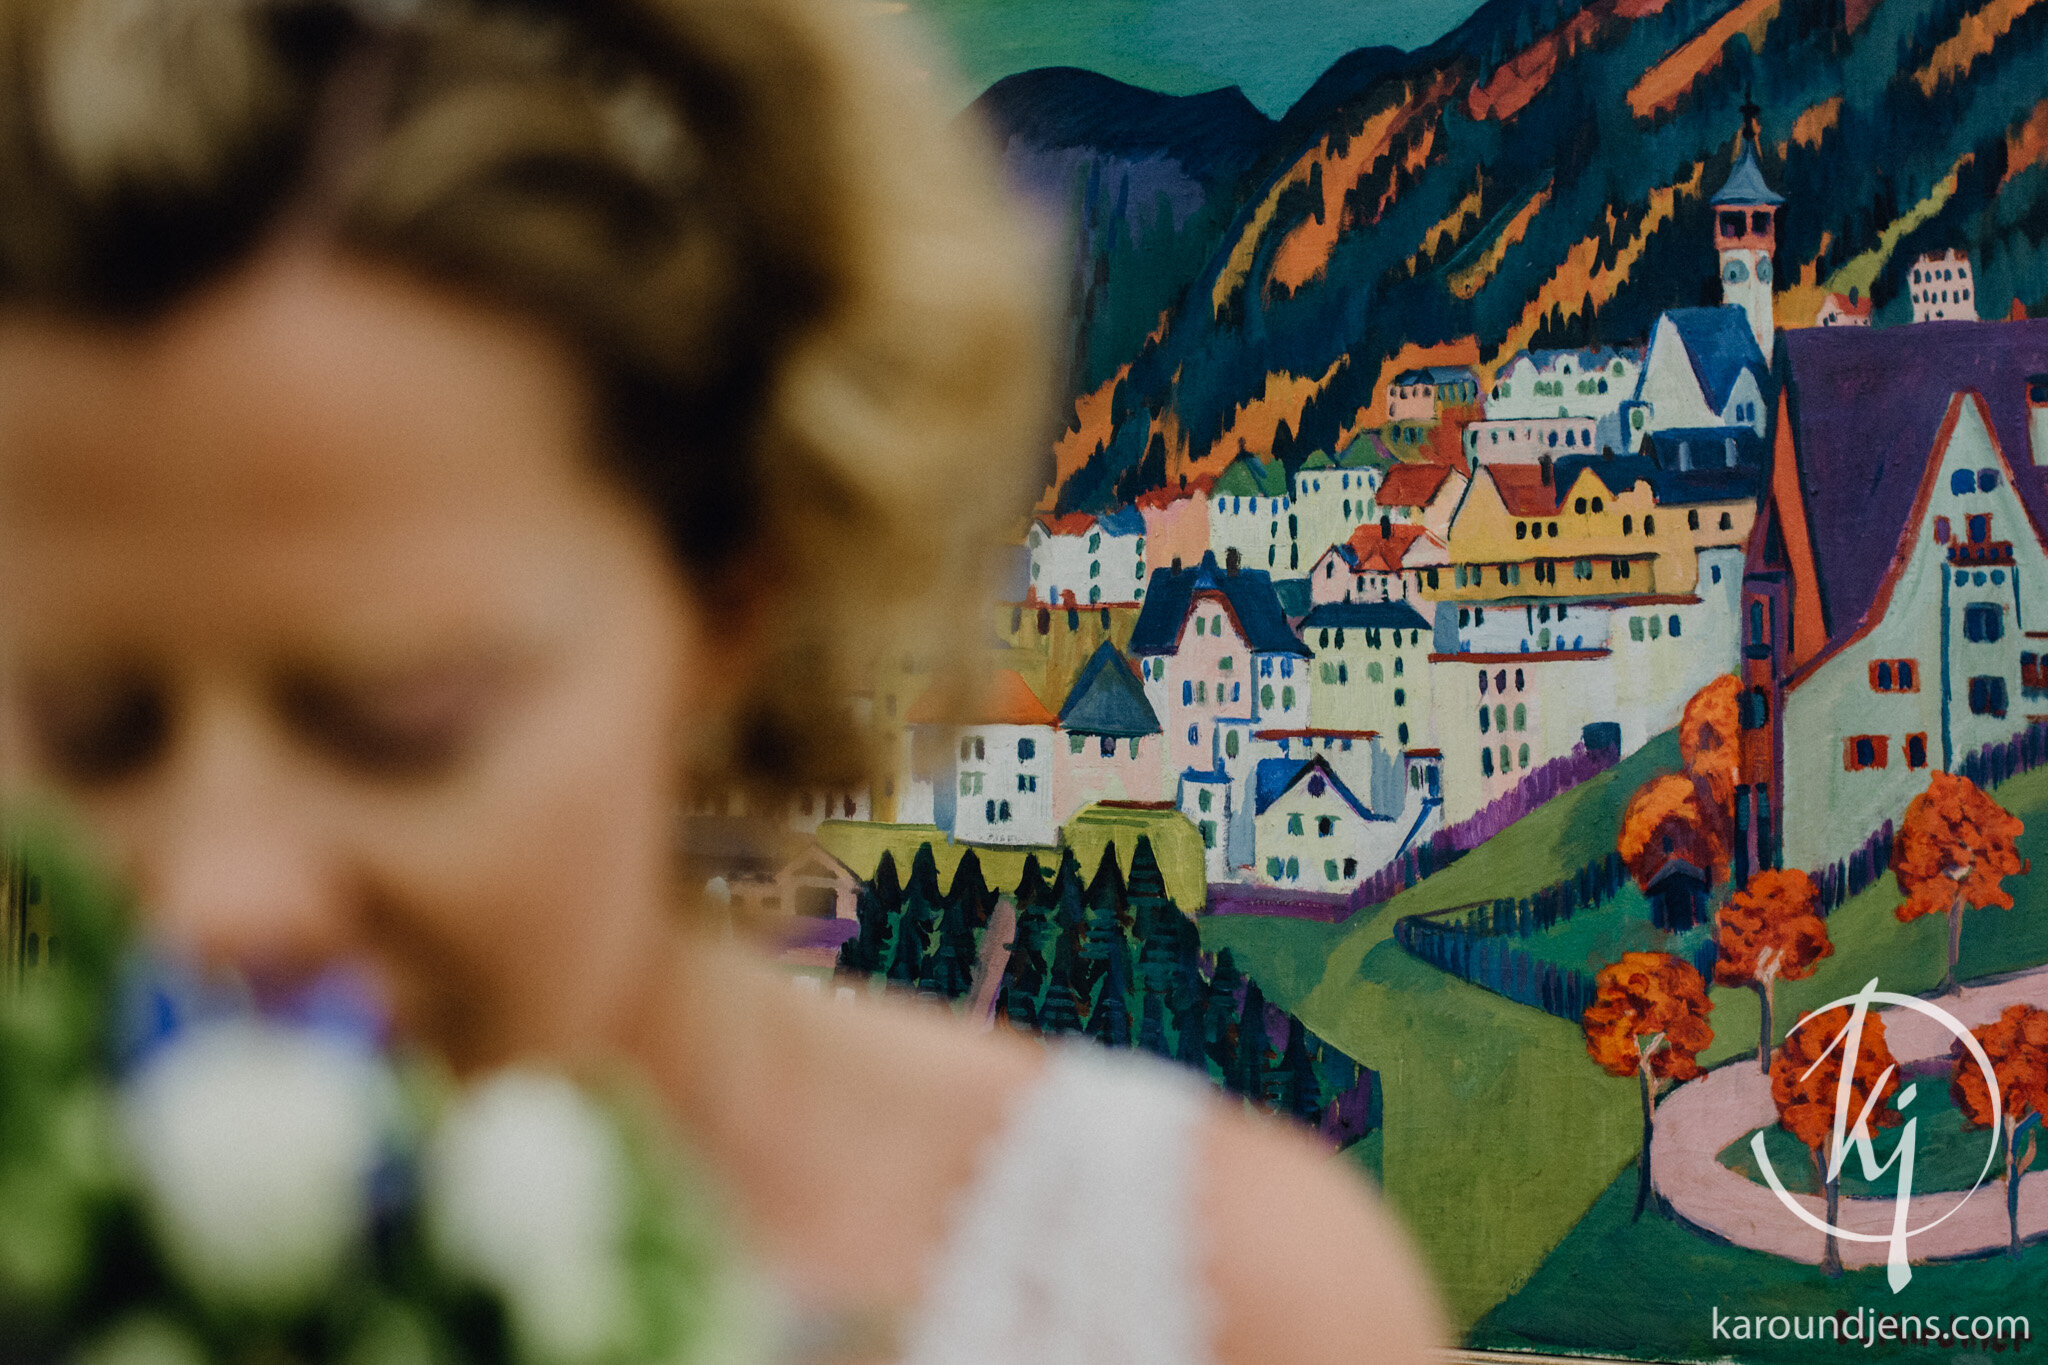 Heiraten-in-den-Bergen-Hochzeit-in-den-Bergen-hochzeitsfotograf-schweiz-karo-und-jens-jens-wenzel-karolin-schell_117_JW_31232.jpg